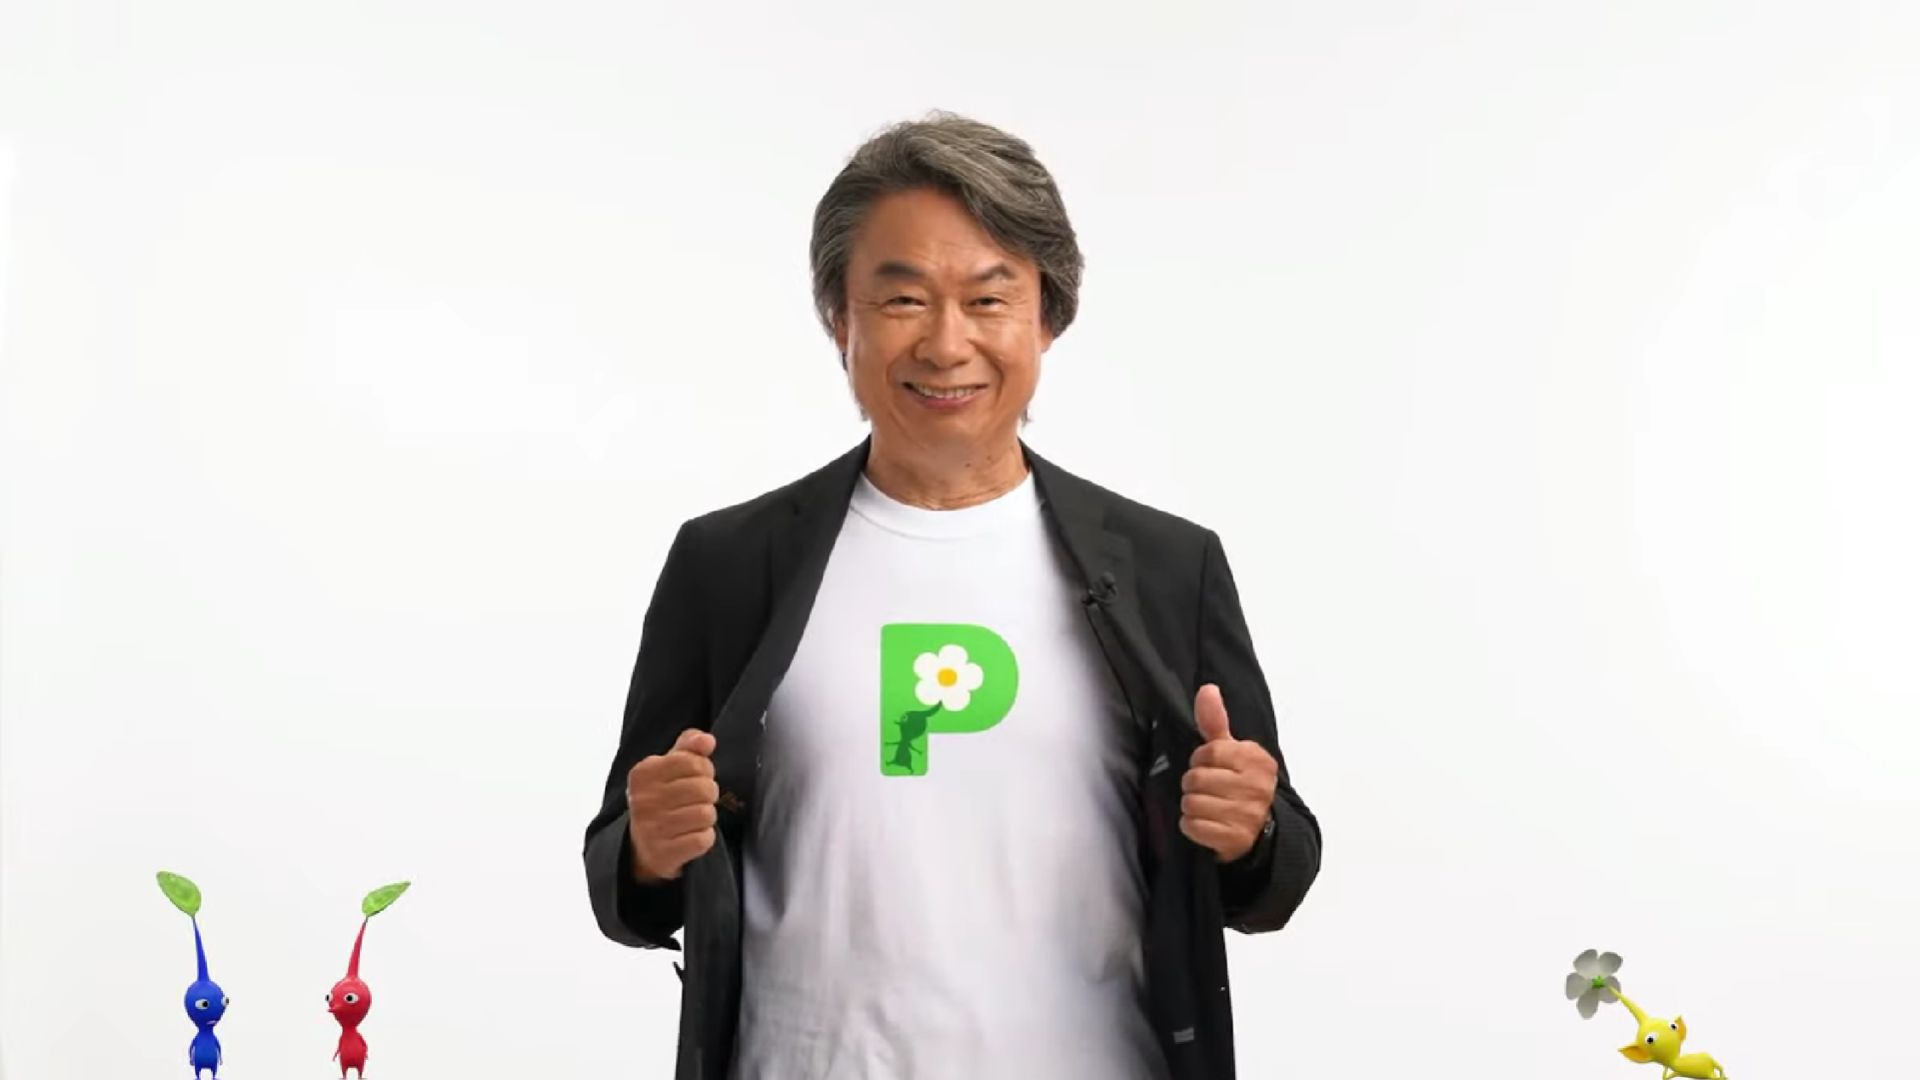 Shigeru Miyamoto Birthday